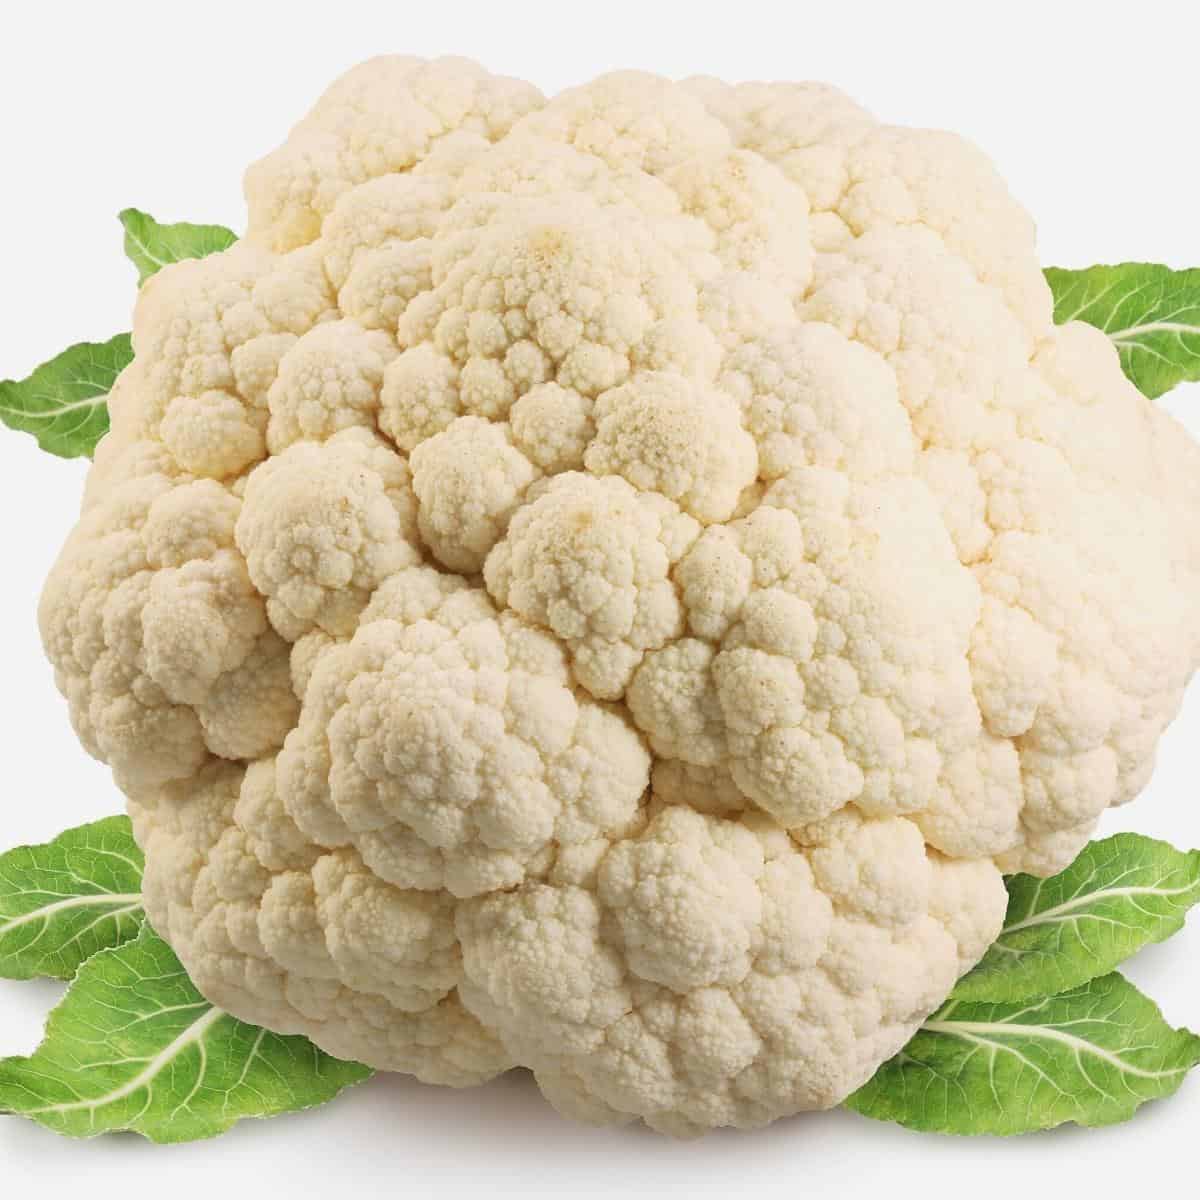 A raw cauliflower head